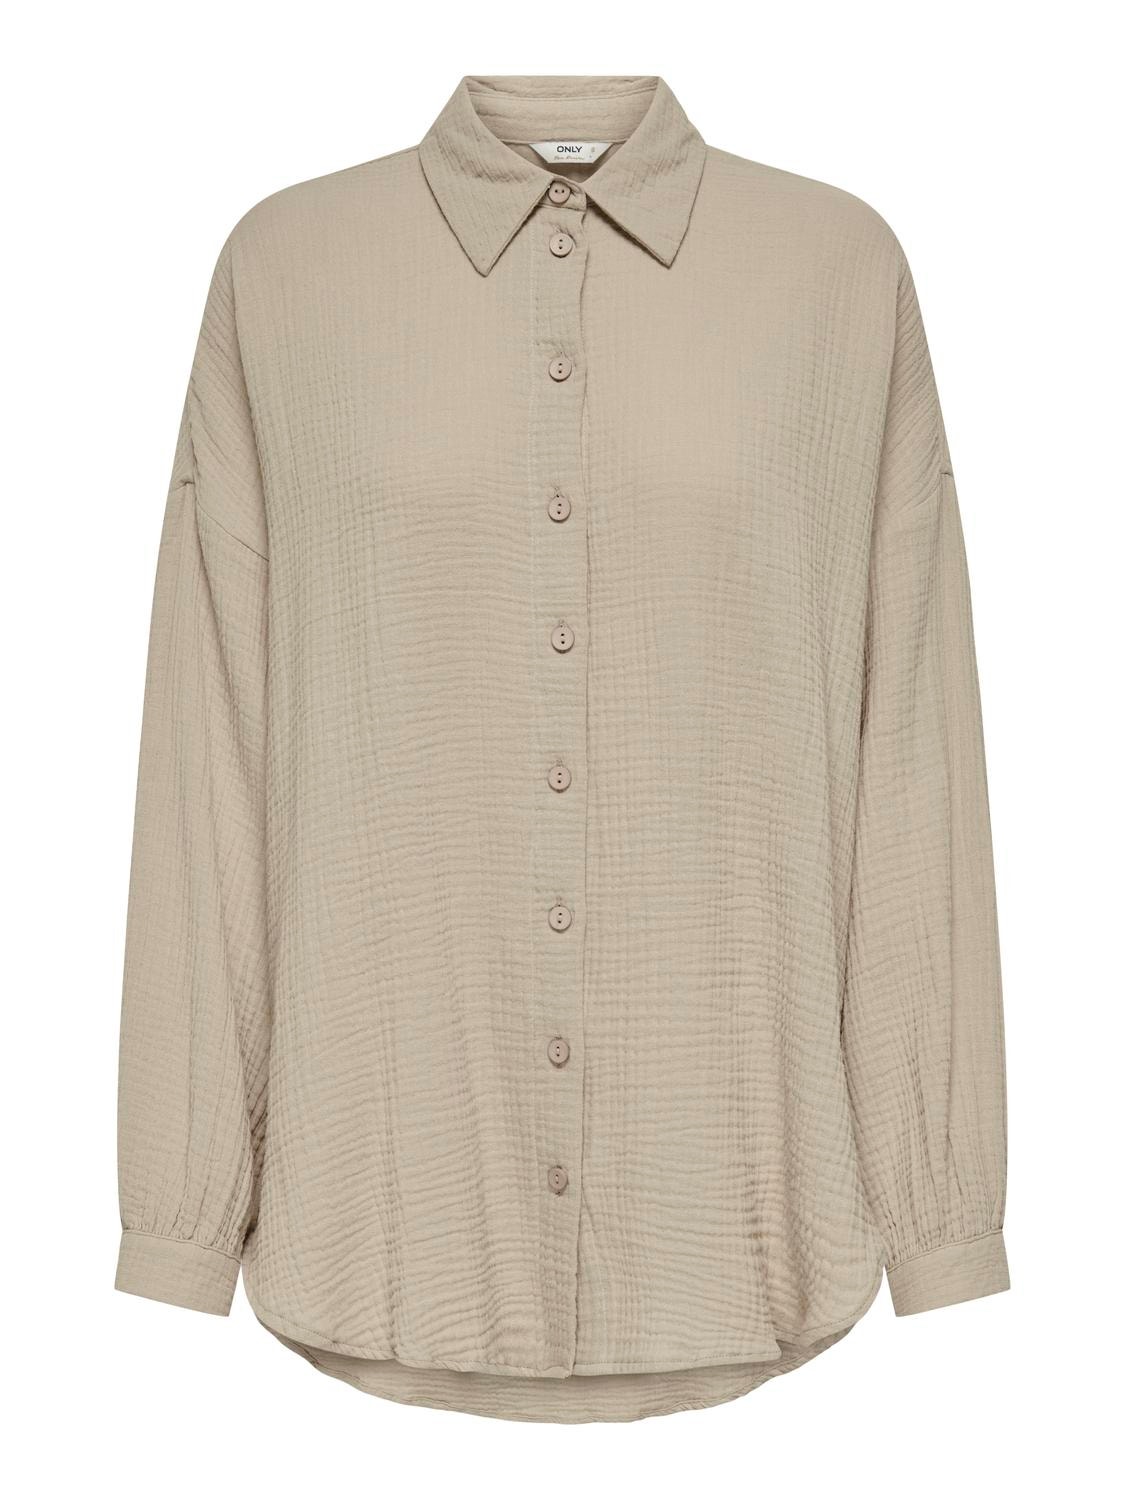 ONLY Camisas Corte regular Cuello de camisa Puños abotonados Hombros caídos -Oxford Tan - 15267998